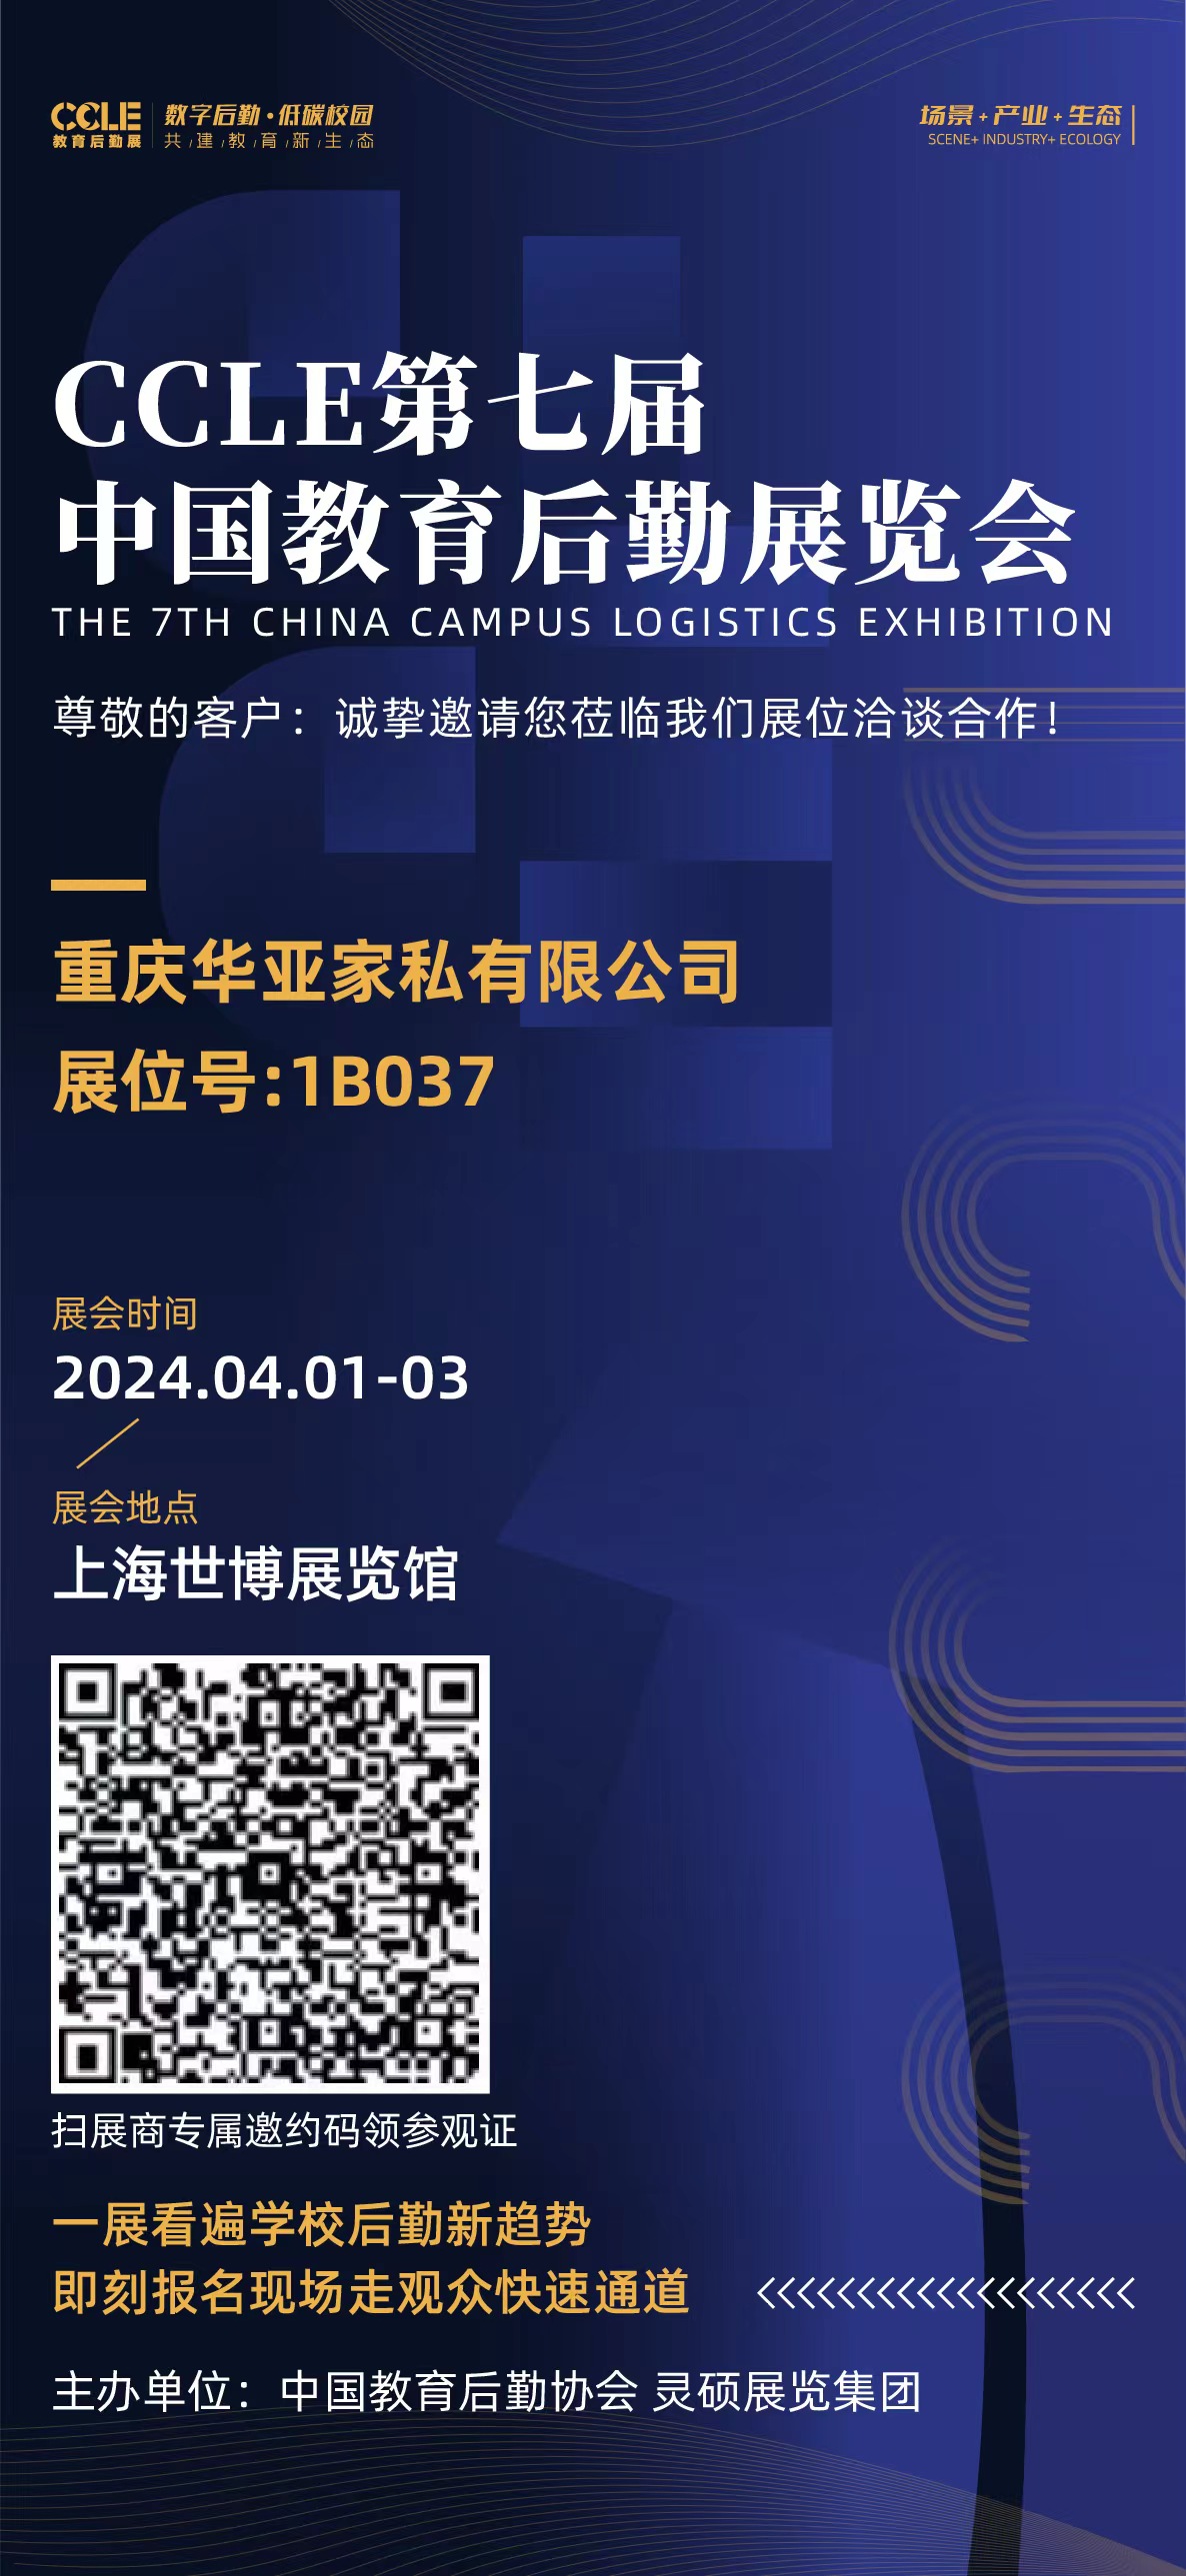 CCLE第七屆中國教育后勤展覽會丨4月1日-3日 上海世博展覽館1B037華亞家私誠邀您的光臨！